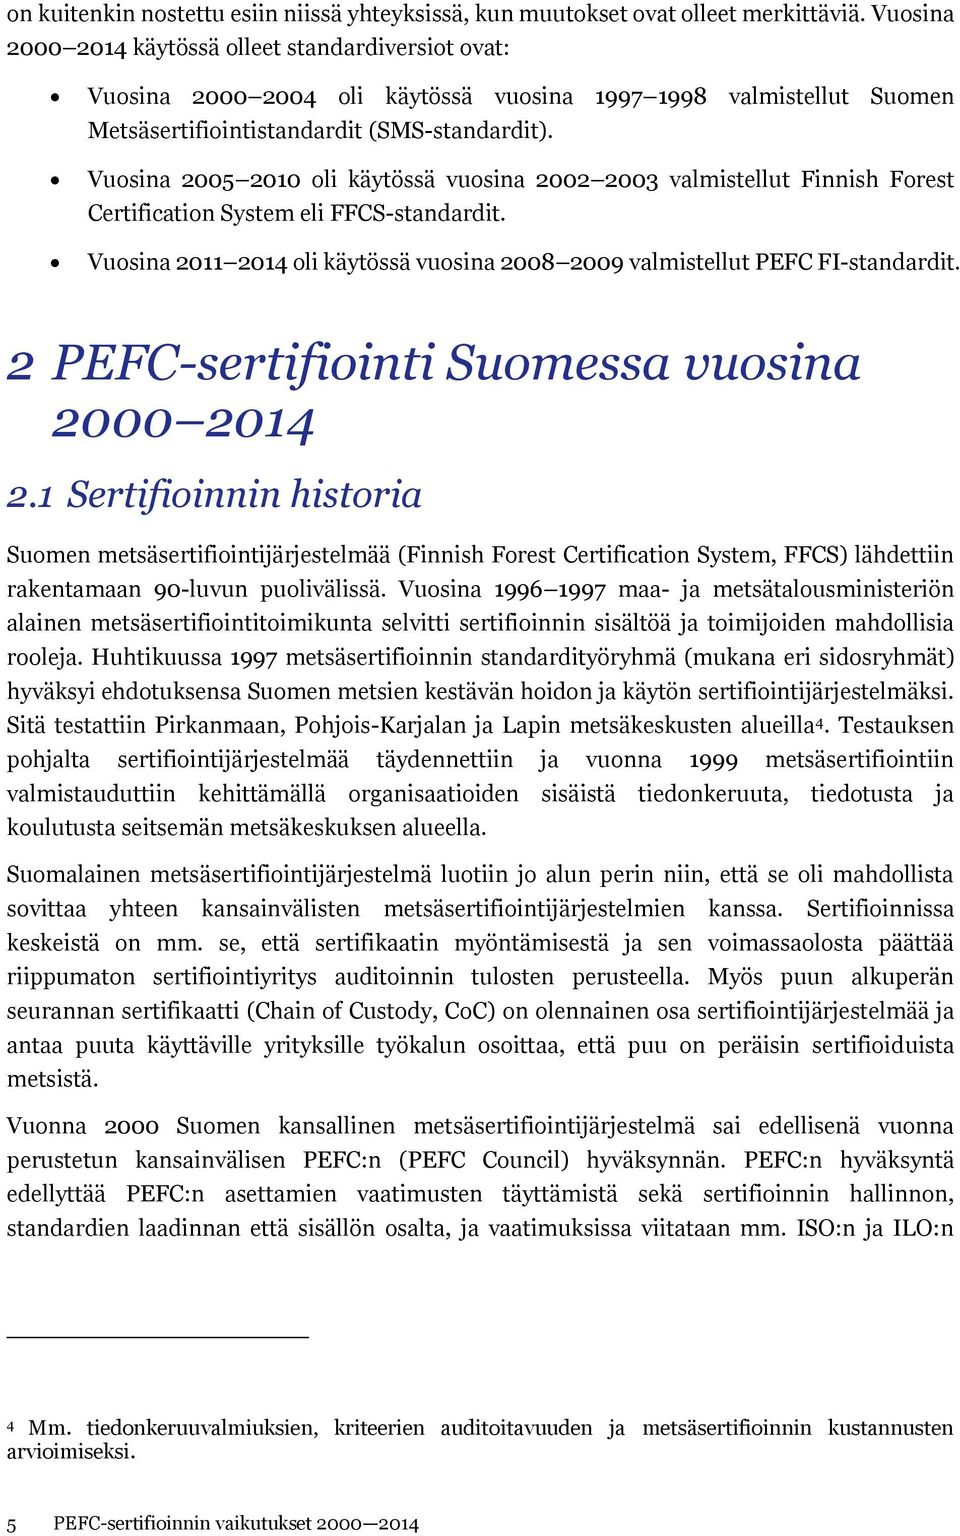 Vuosina 2005 2010 oli käytössä vuosina 2002 2003 valmistellut Finnish Forest Certification System eli FFCS-standardit. Vuosina 2011 2014 oli käytössä vuosina 2008 2009 valmistellut PEFC FI-standardit.